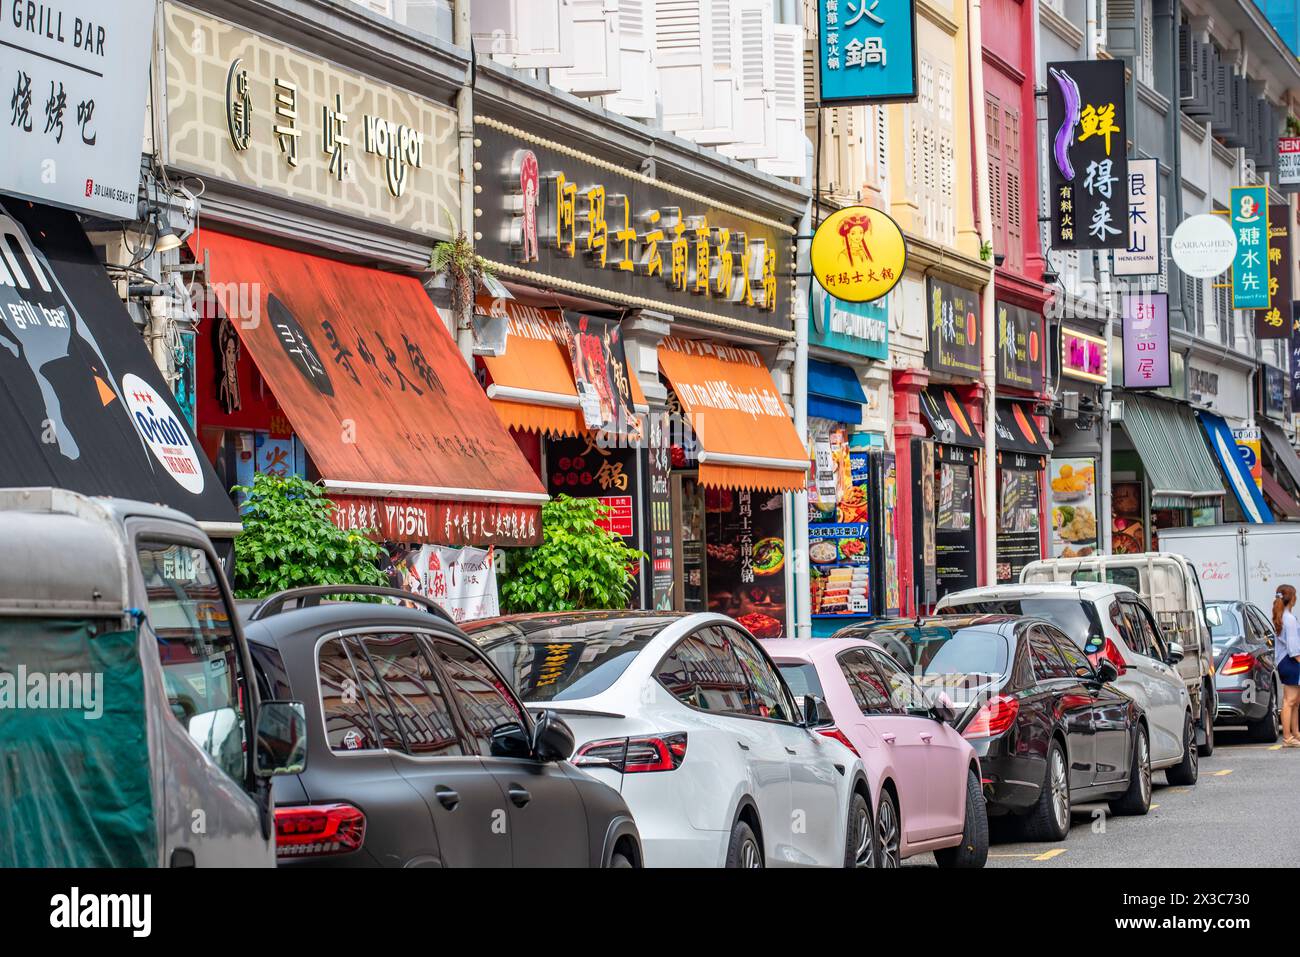 La colorata via Liang Seah a Singapore è piena di negozi storici e ristoranti cinesi ed è gratuita dalle 6,30 alle 24 quasi tutte le sere Foto Stock